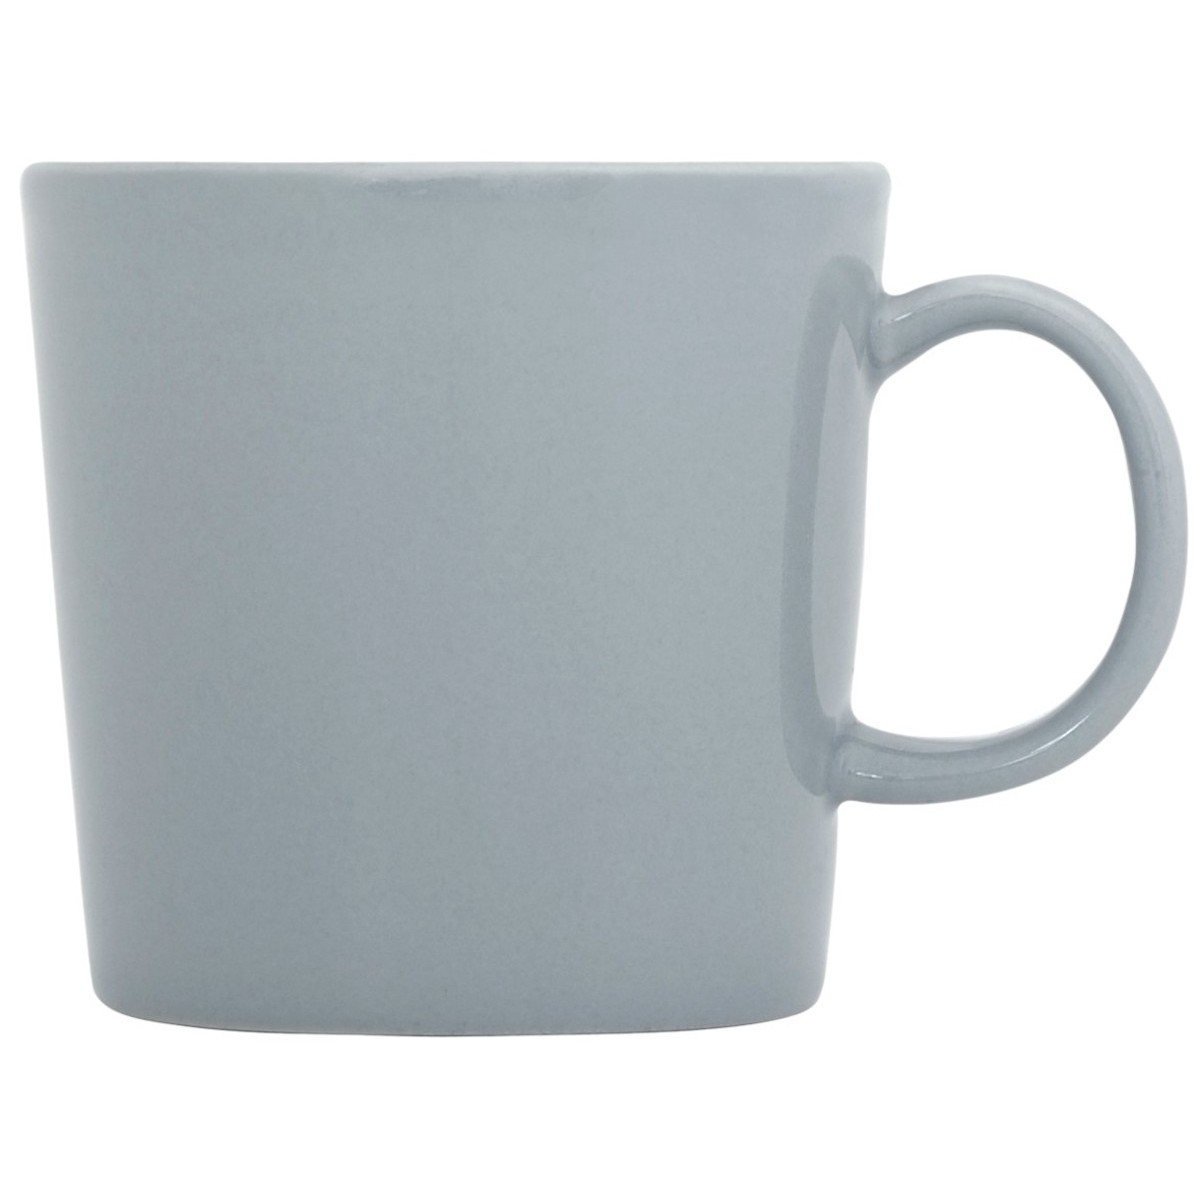 0.4l - Teema mug - pearl grey - 1005896